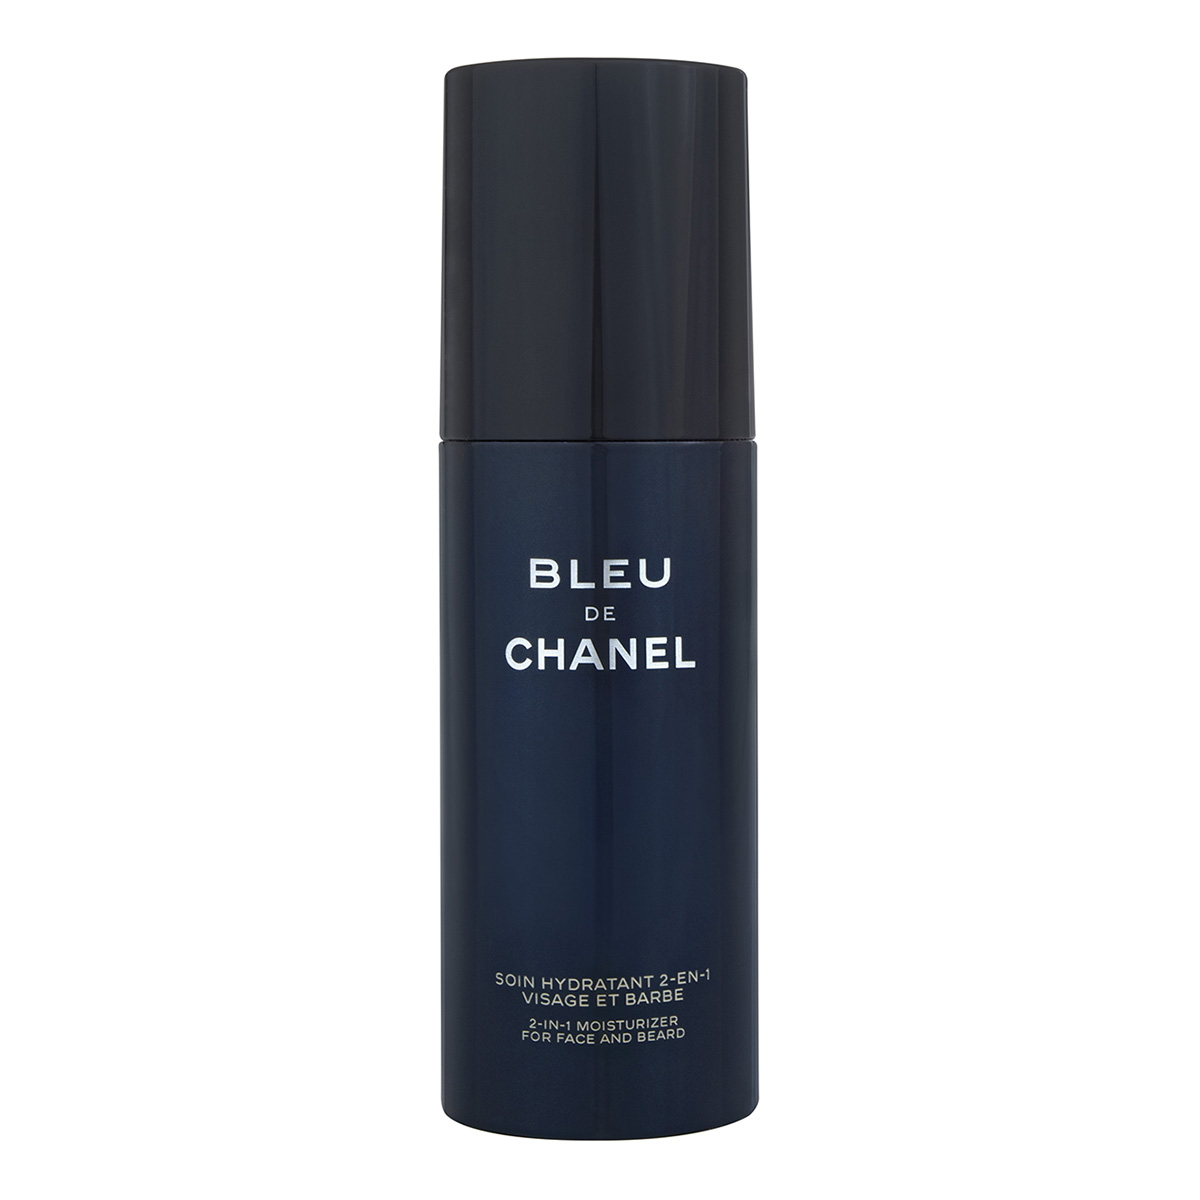 Chanel Bleu de Chanel 2-1 Moisturiser 50ml For Face & Beard